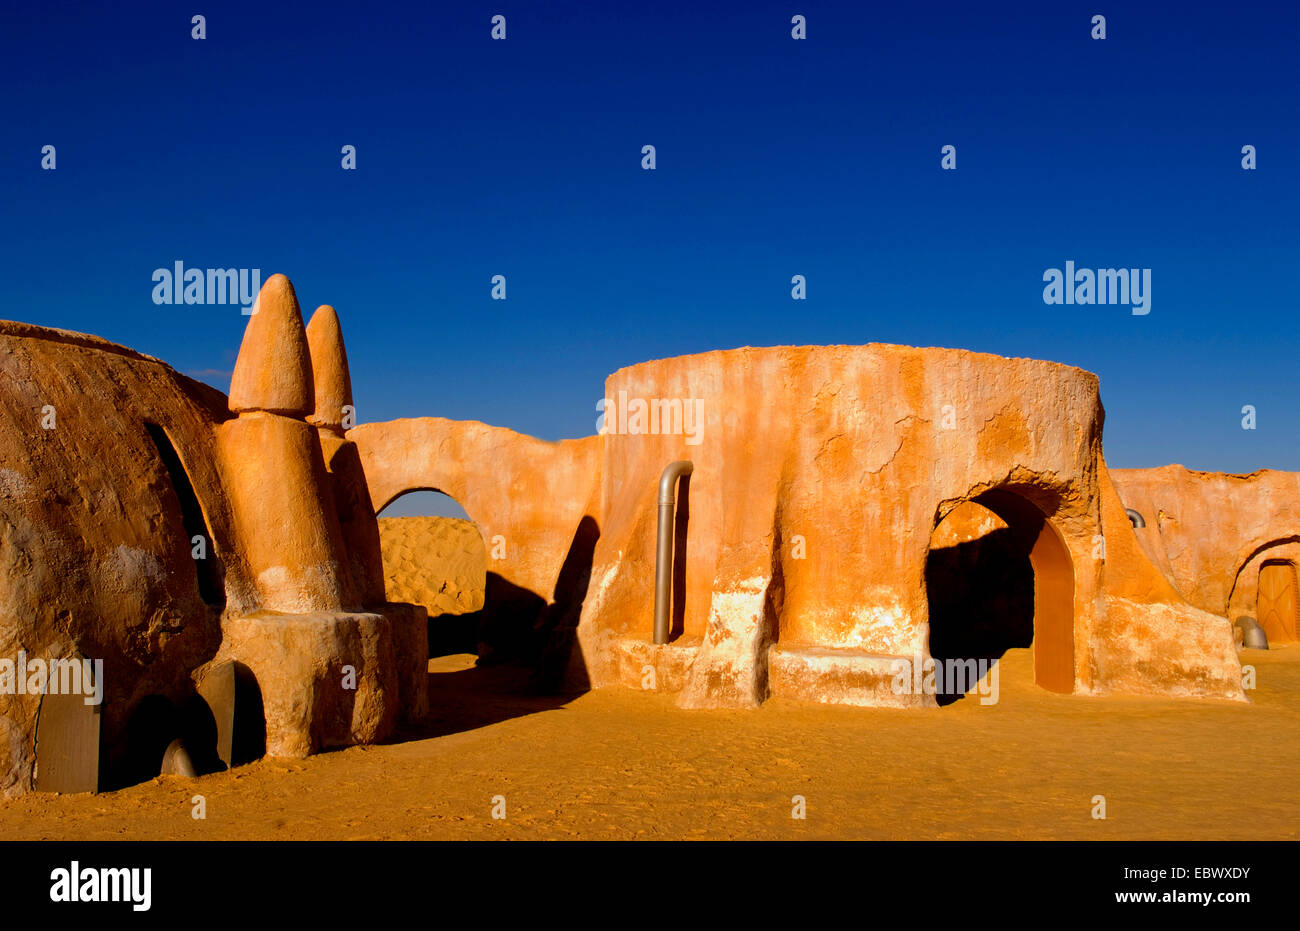 Famosa película serie de películas Star Wars en el desierto de Sahara cerca de Tozeur, Túnez Foto de stock